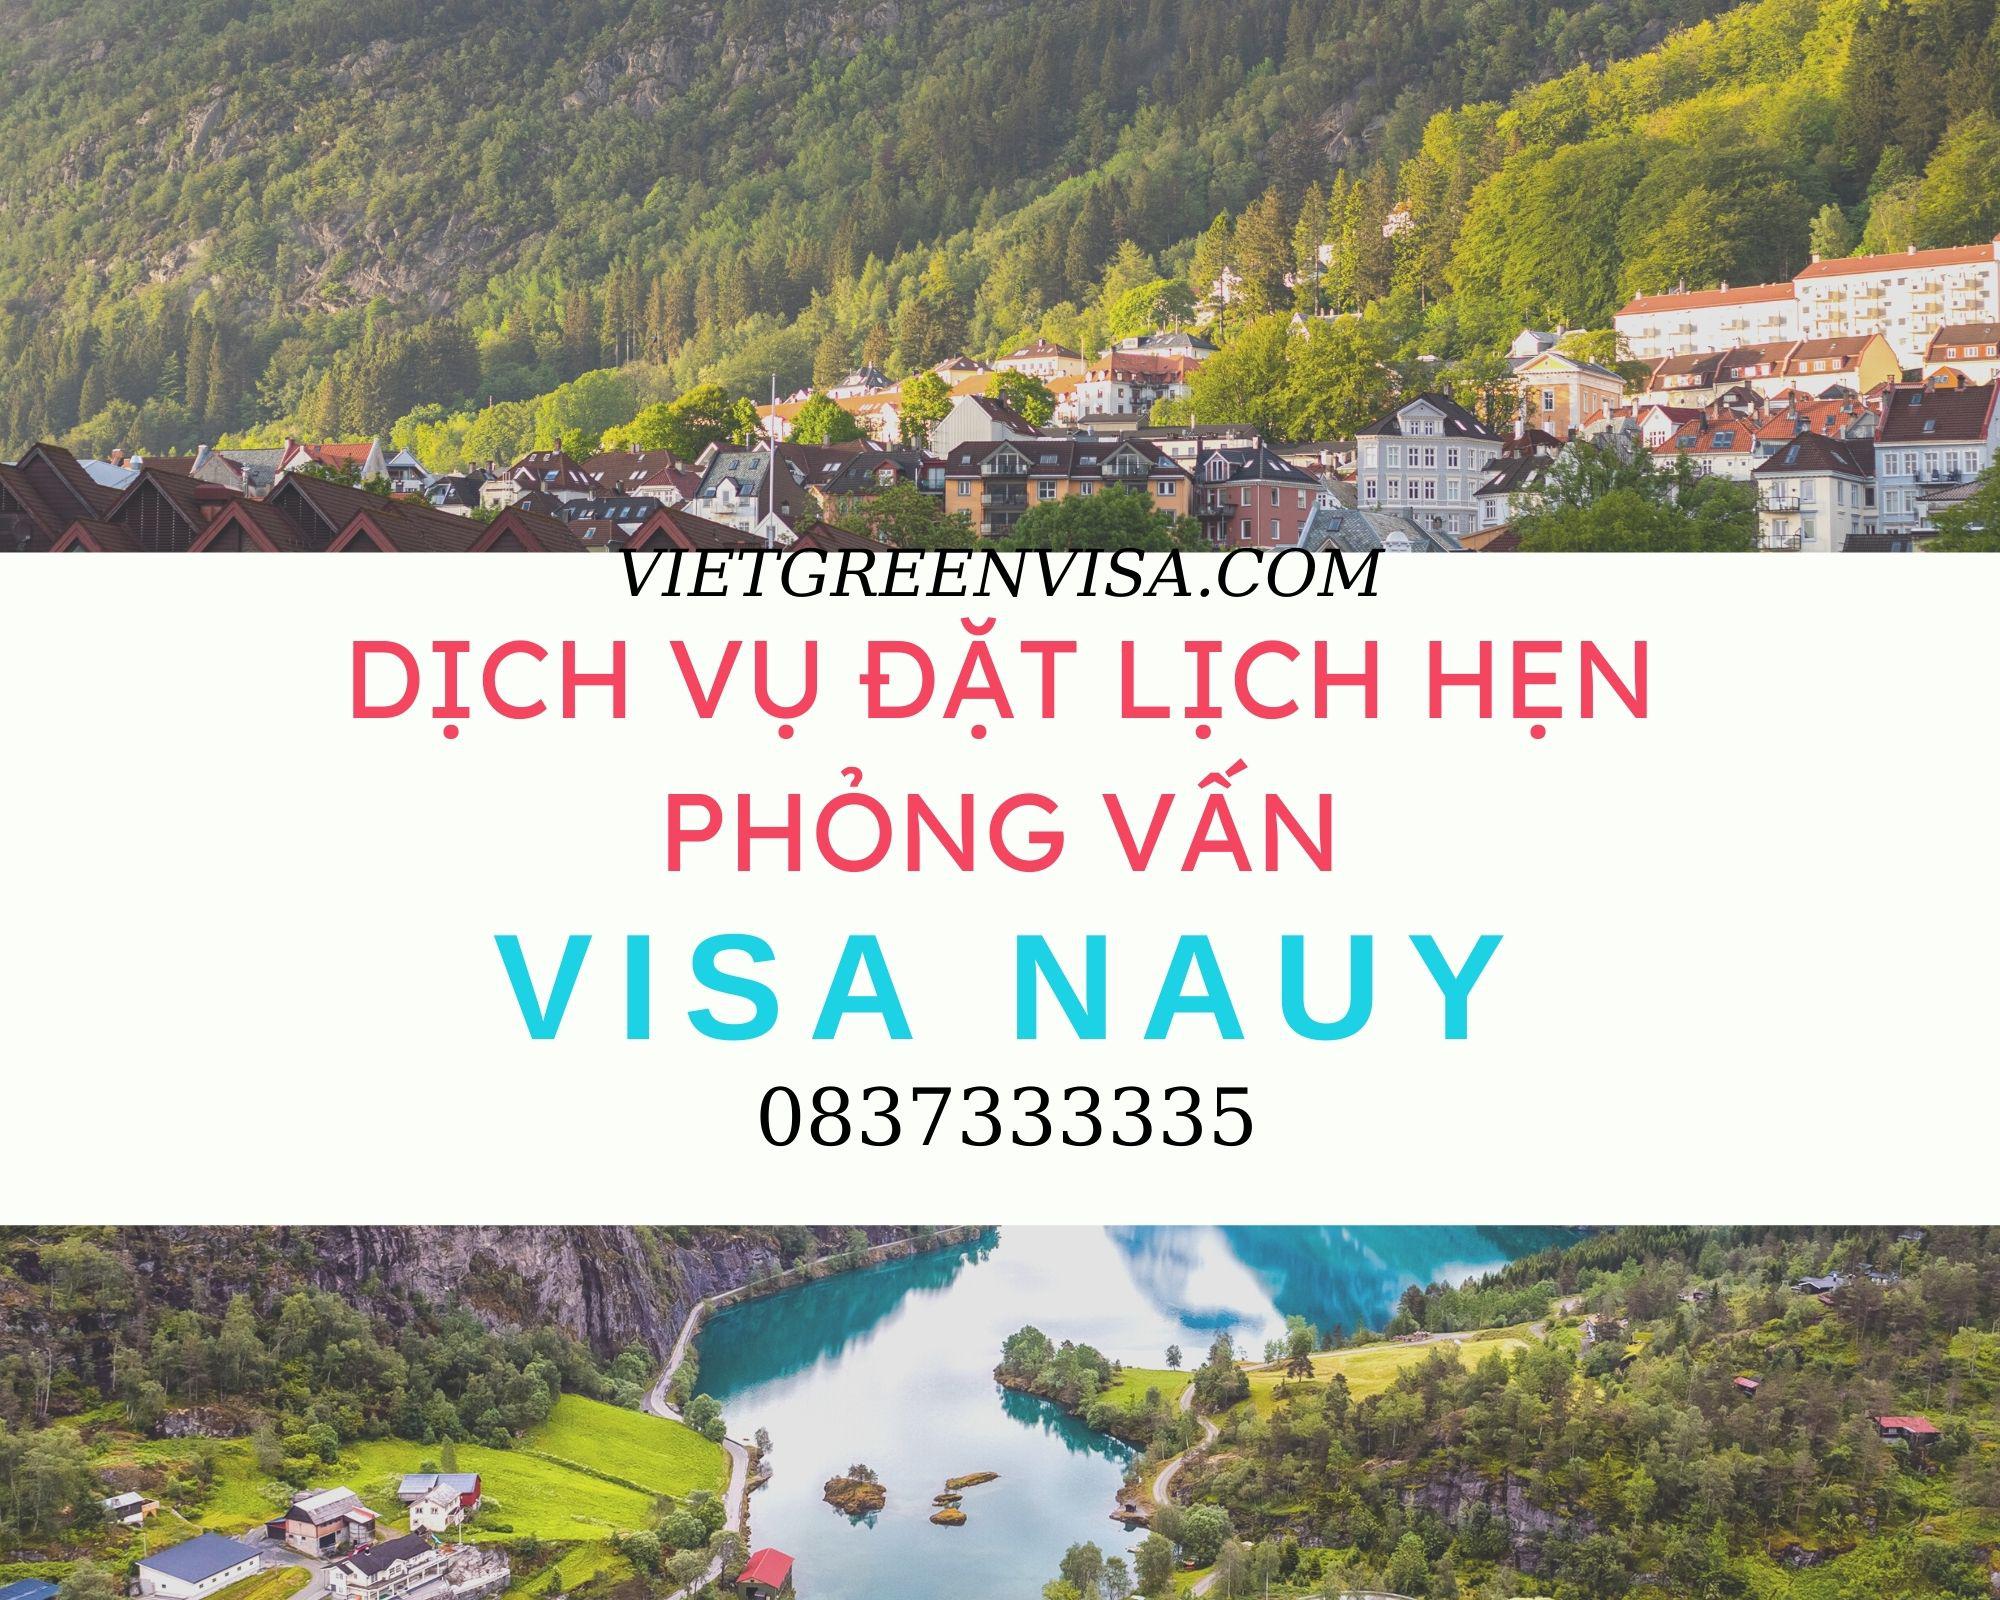 Đặt lịch hẹn phỏng vấn xin visa Nauy trọn gói